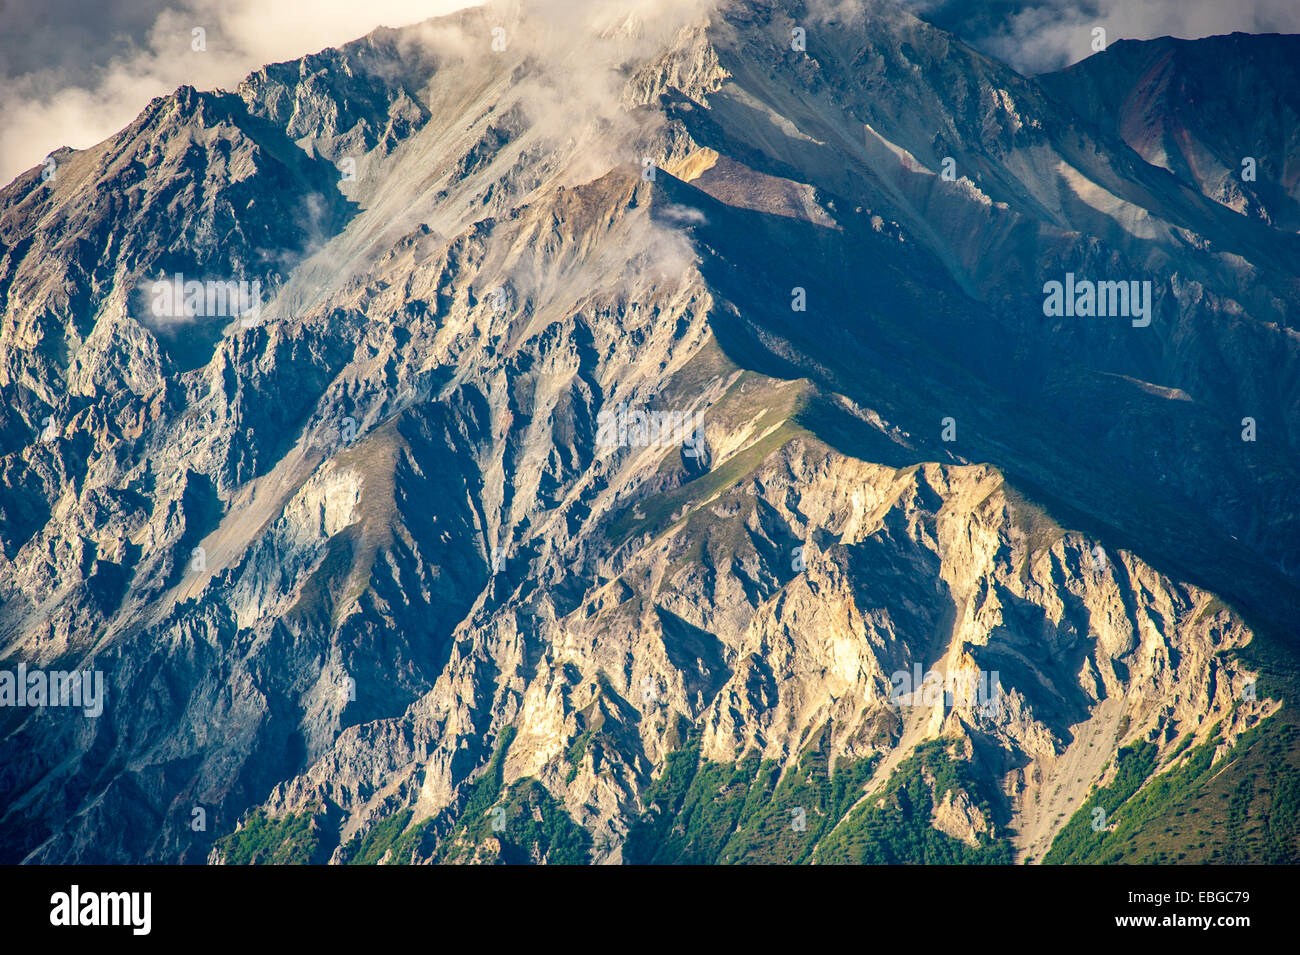 Mountain face of Chucach Mountains near Palmer, Alaska Stock Photo